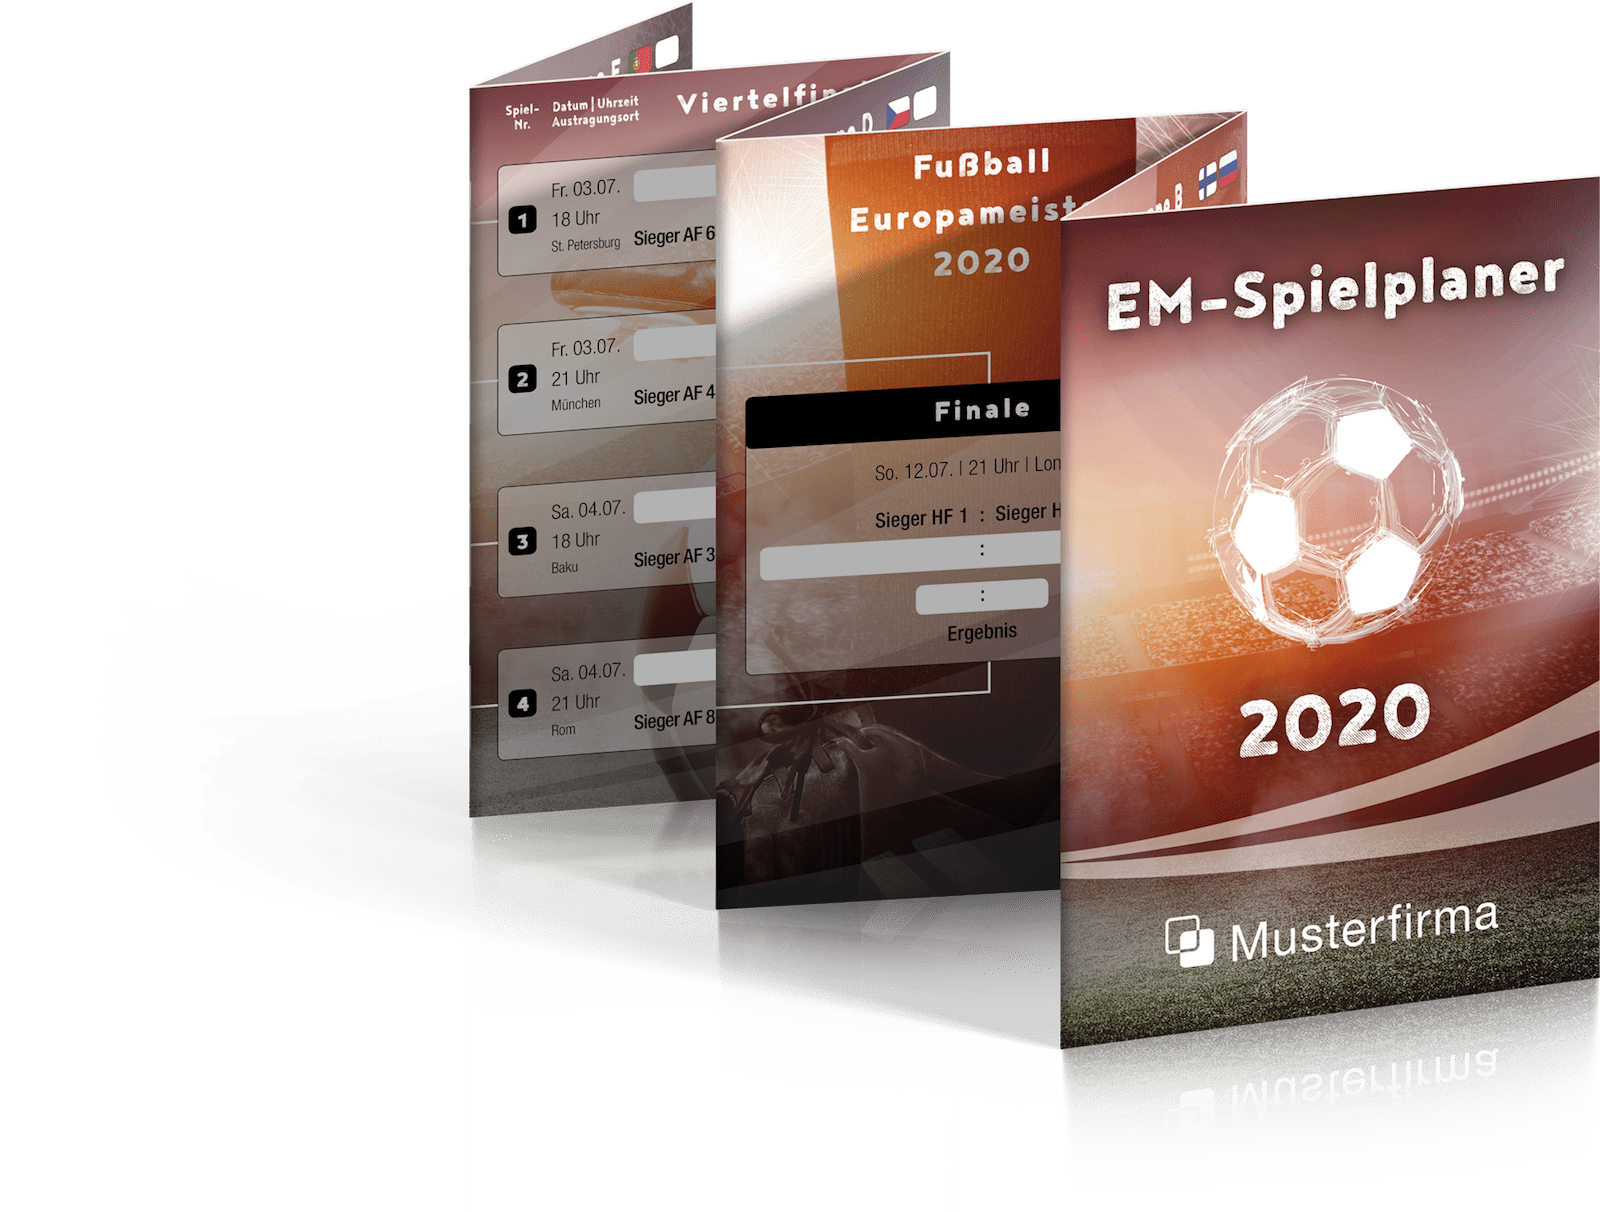 Abbildung des Fußball EM-Spielplaners 2020 als Faltplaner in unserem bunten Design.